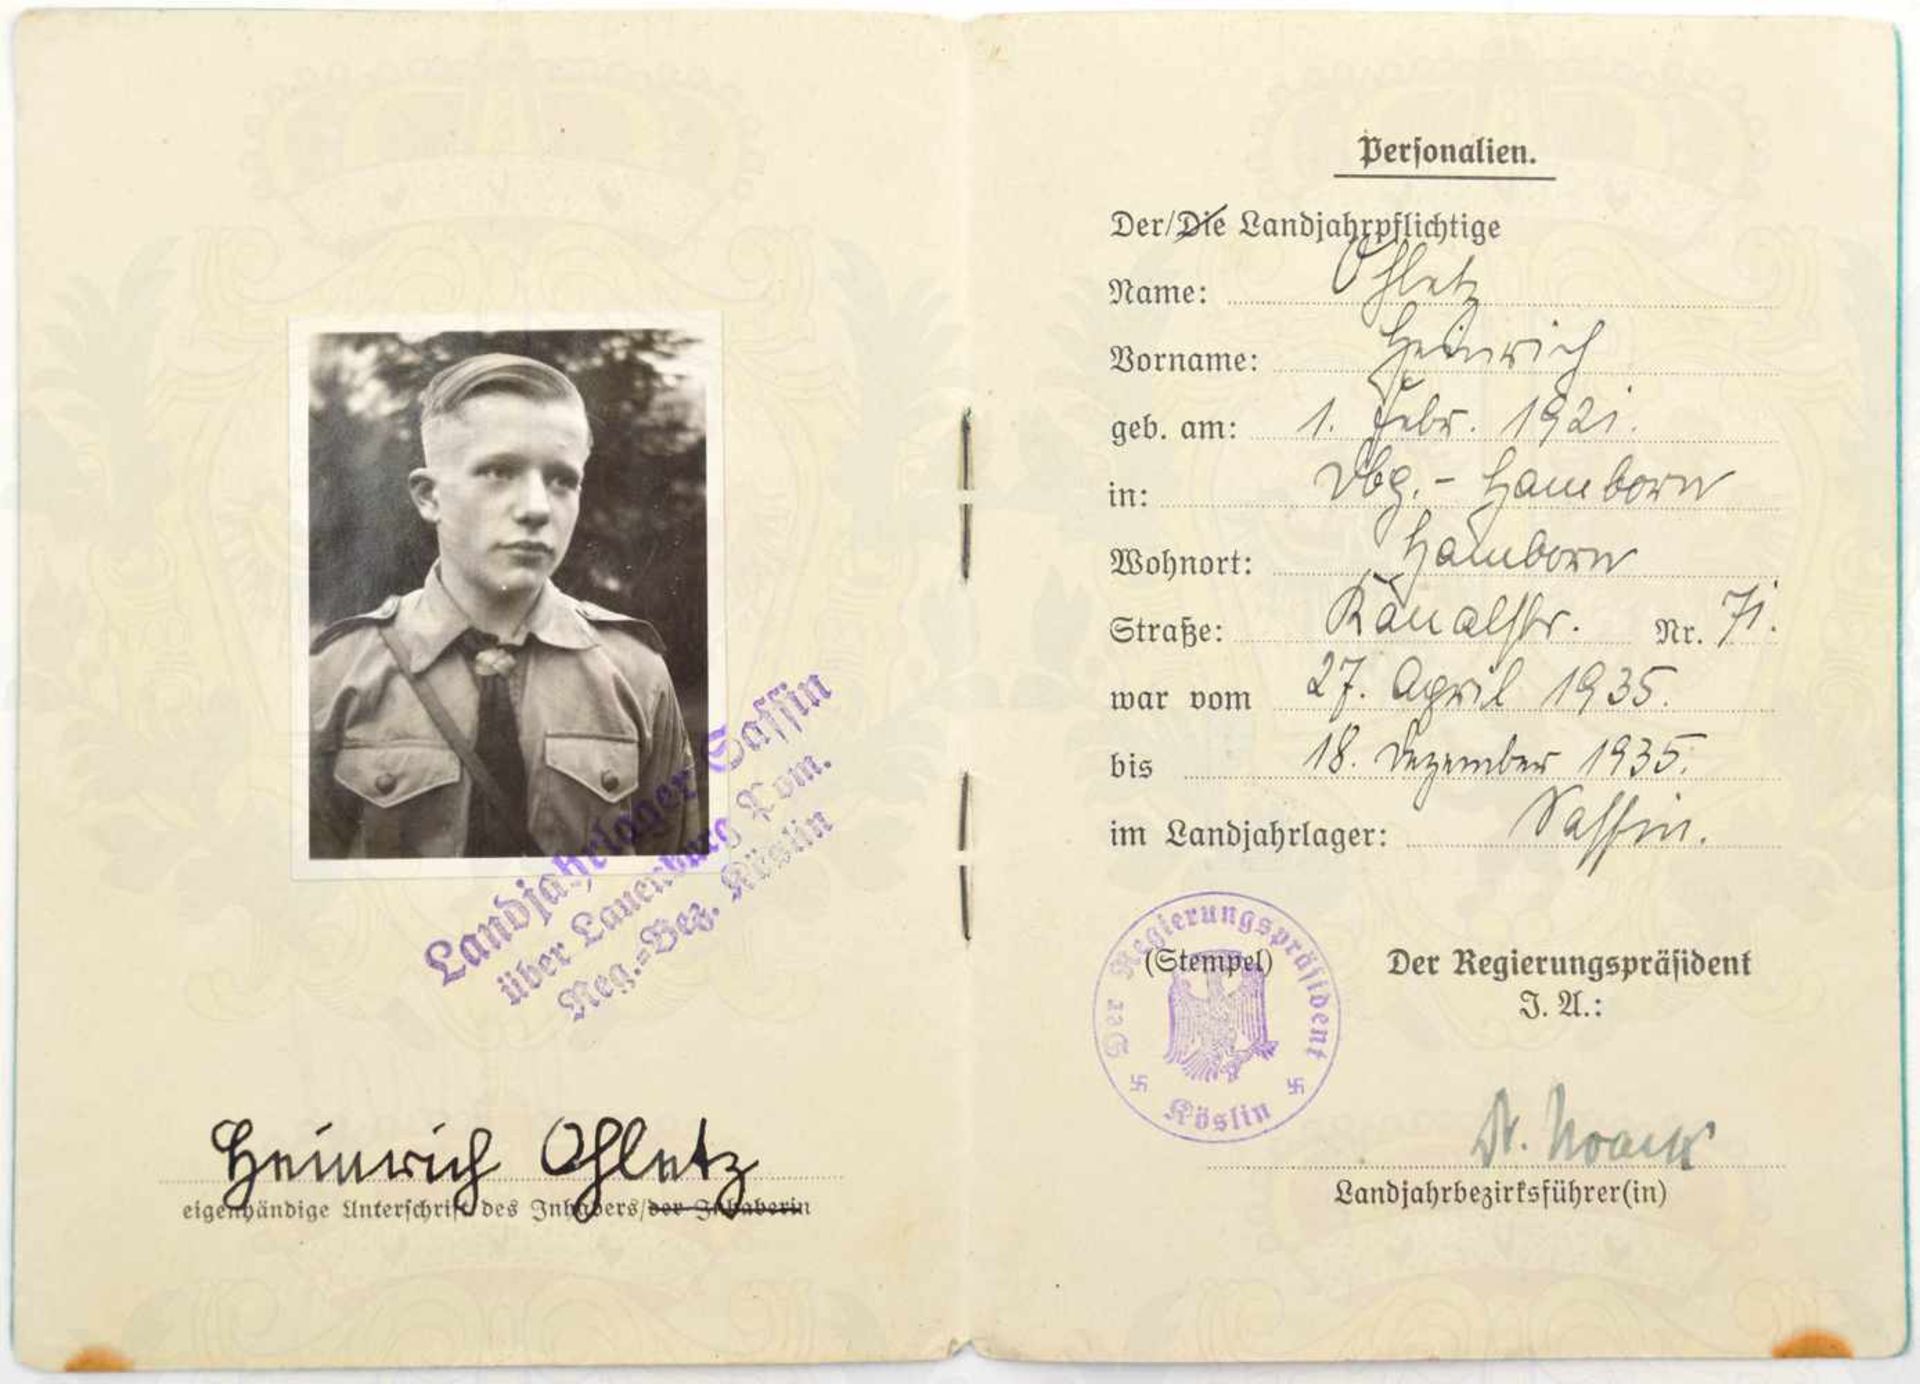 2 AUSWEISE, Landjahrlager Sassin bei Lauenburg in Pommern 1935, Hitlerjunge aus Duisburg-Hamborn, m. - Bild 2 aus 2